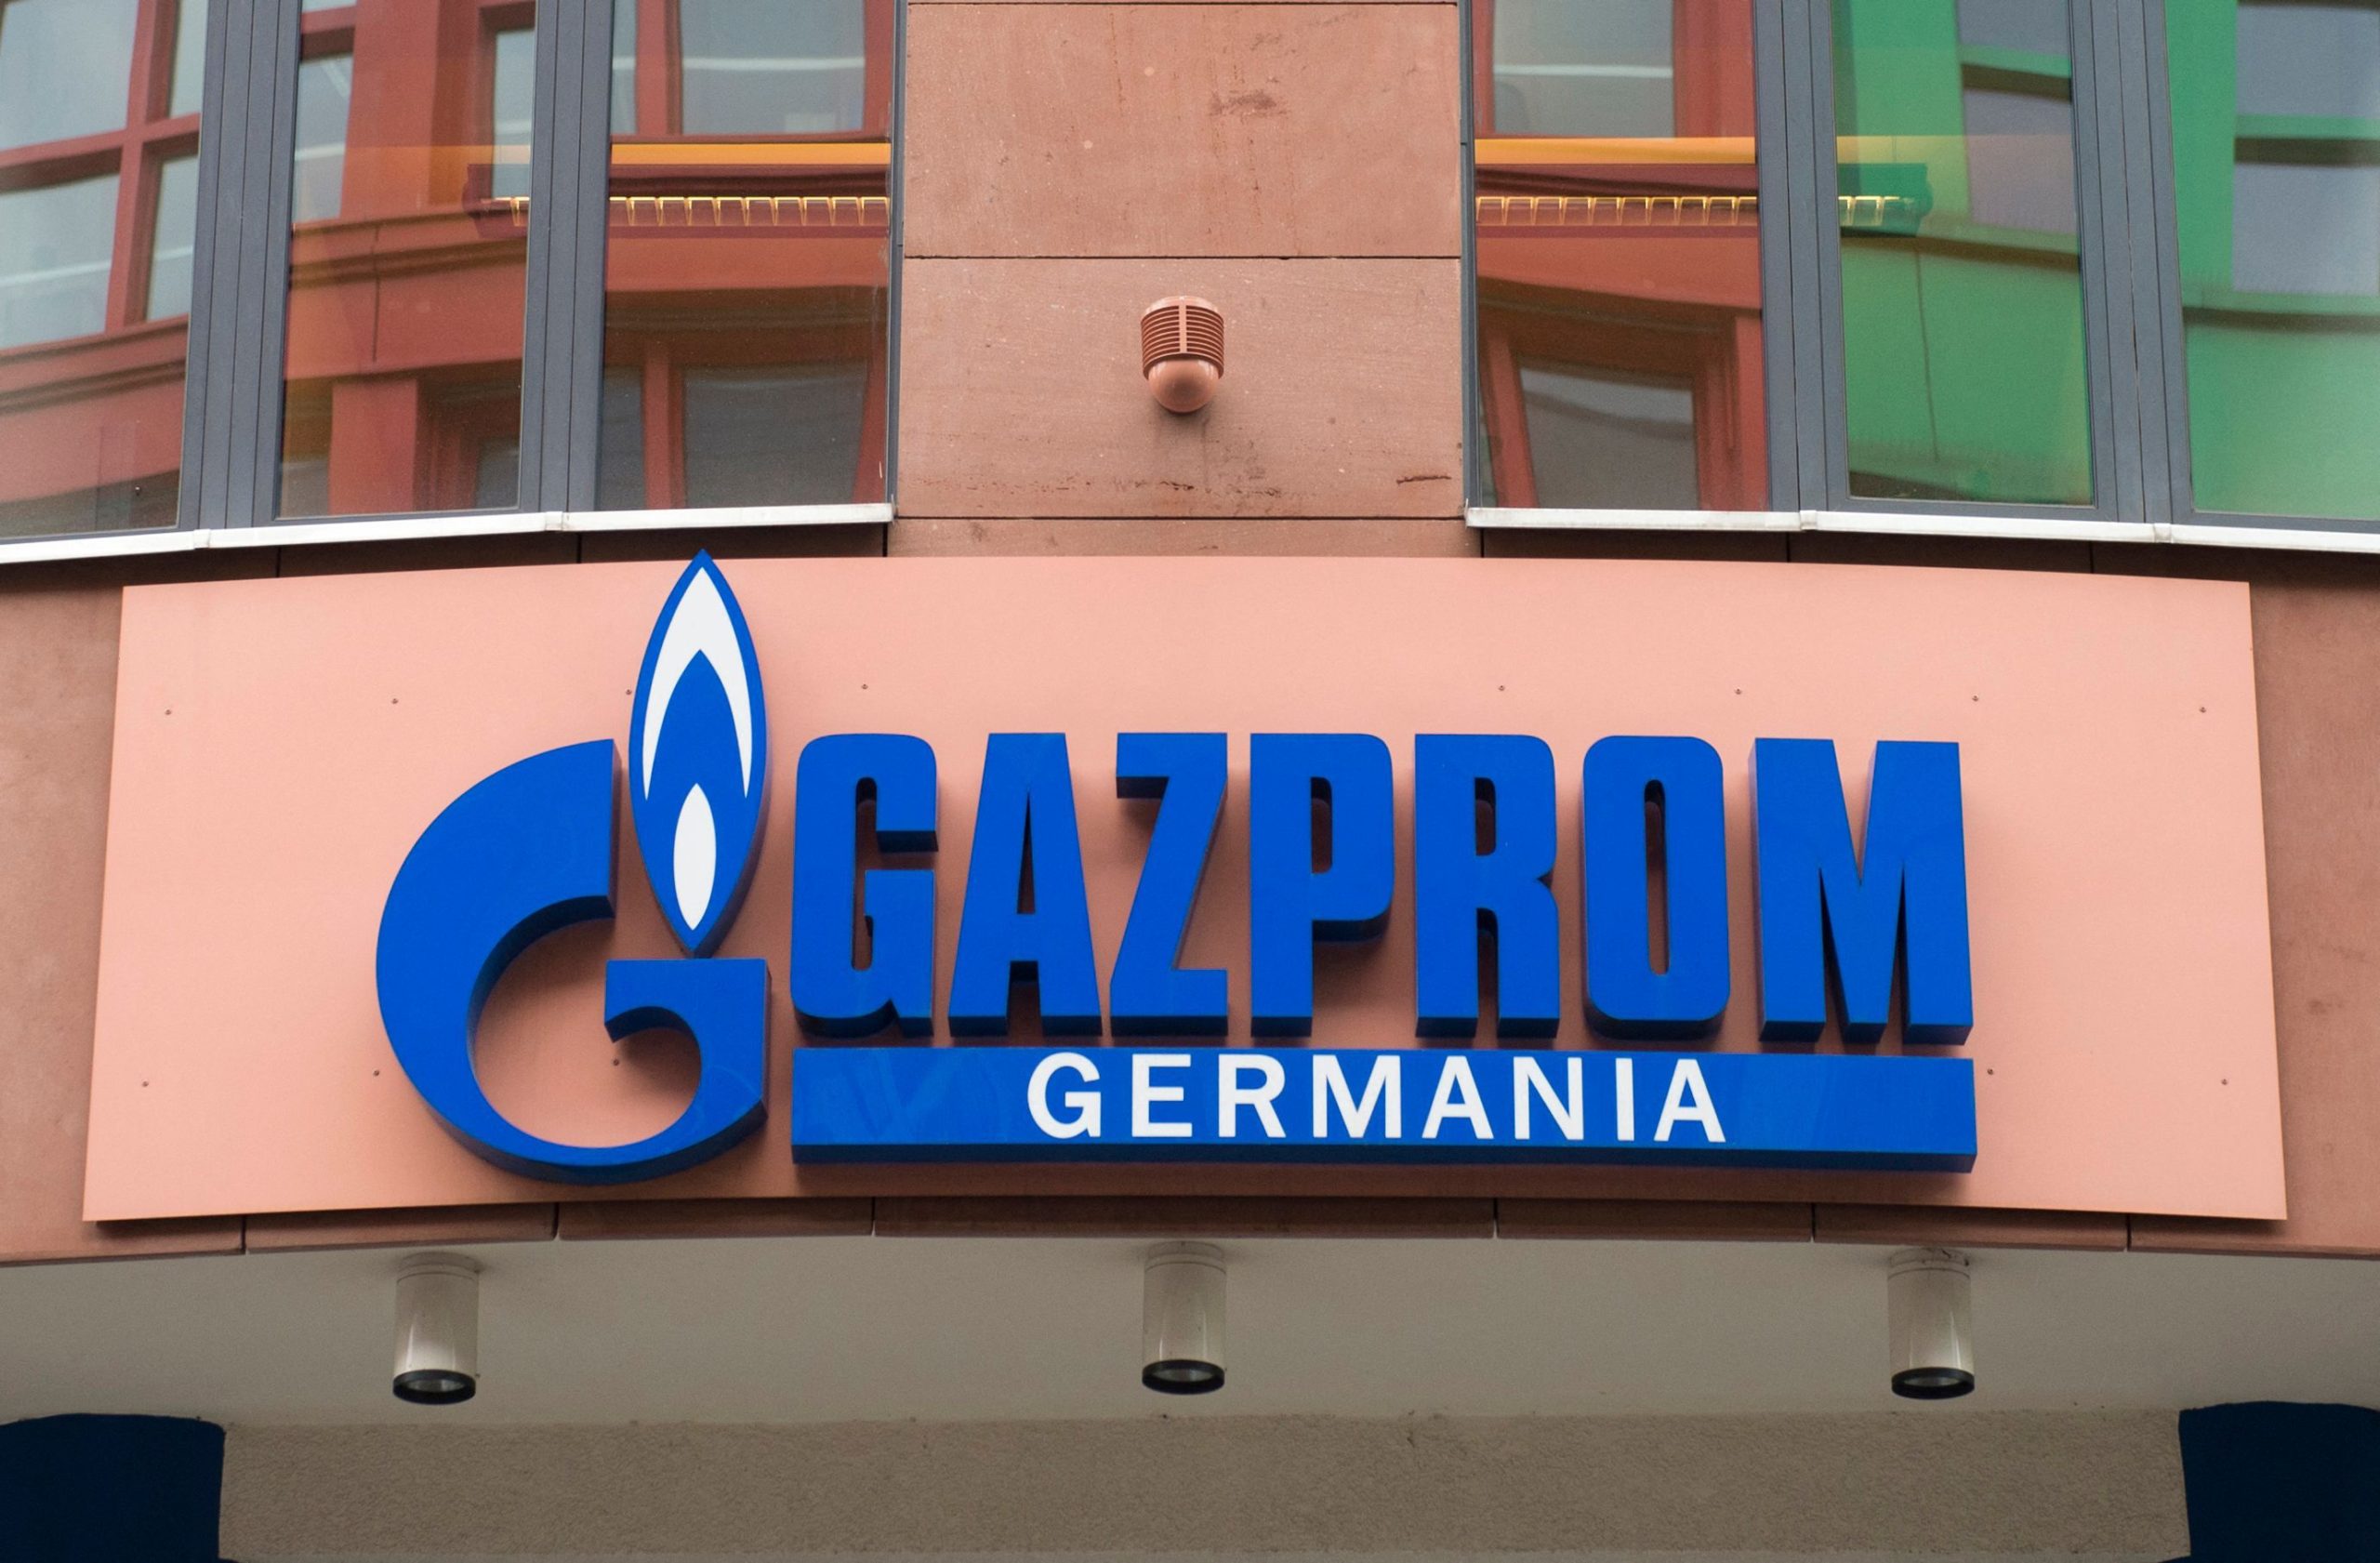 Almanya, Gazprom Germania’yı 10 milyar avroluk kurtarma paketiyle iflastan koruyacak